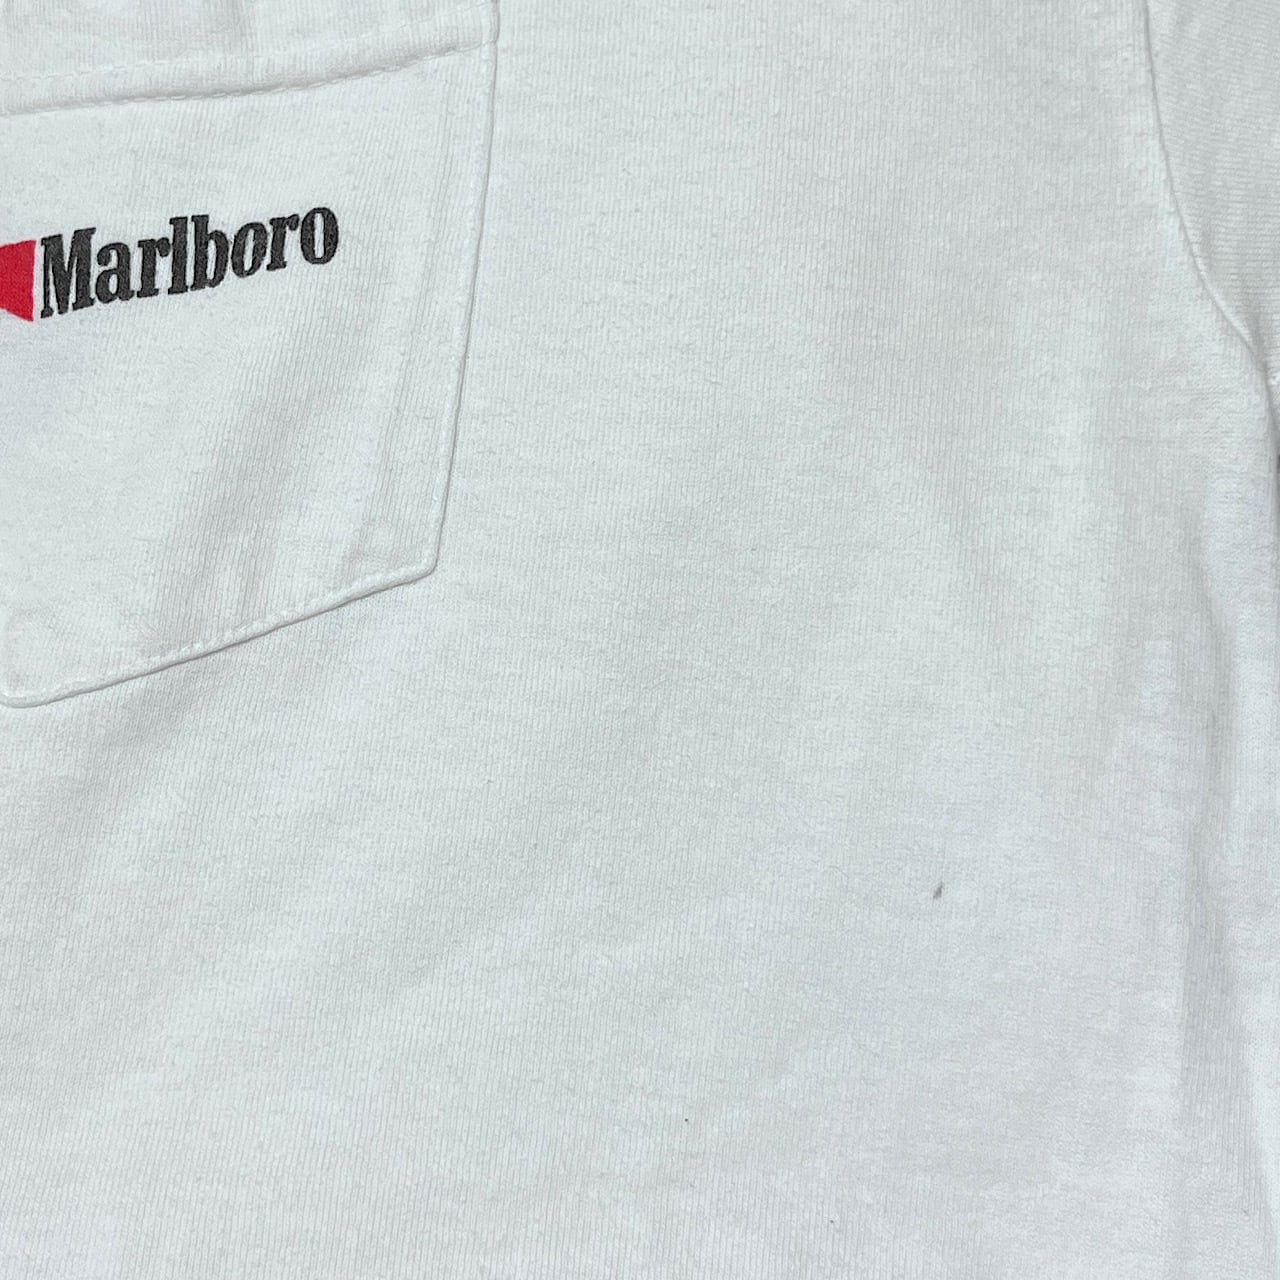 90年代 Marlboro マルボロ カウボーイ 企業ロゴ 胸ポケット バック